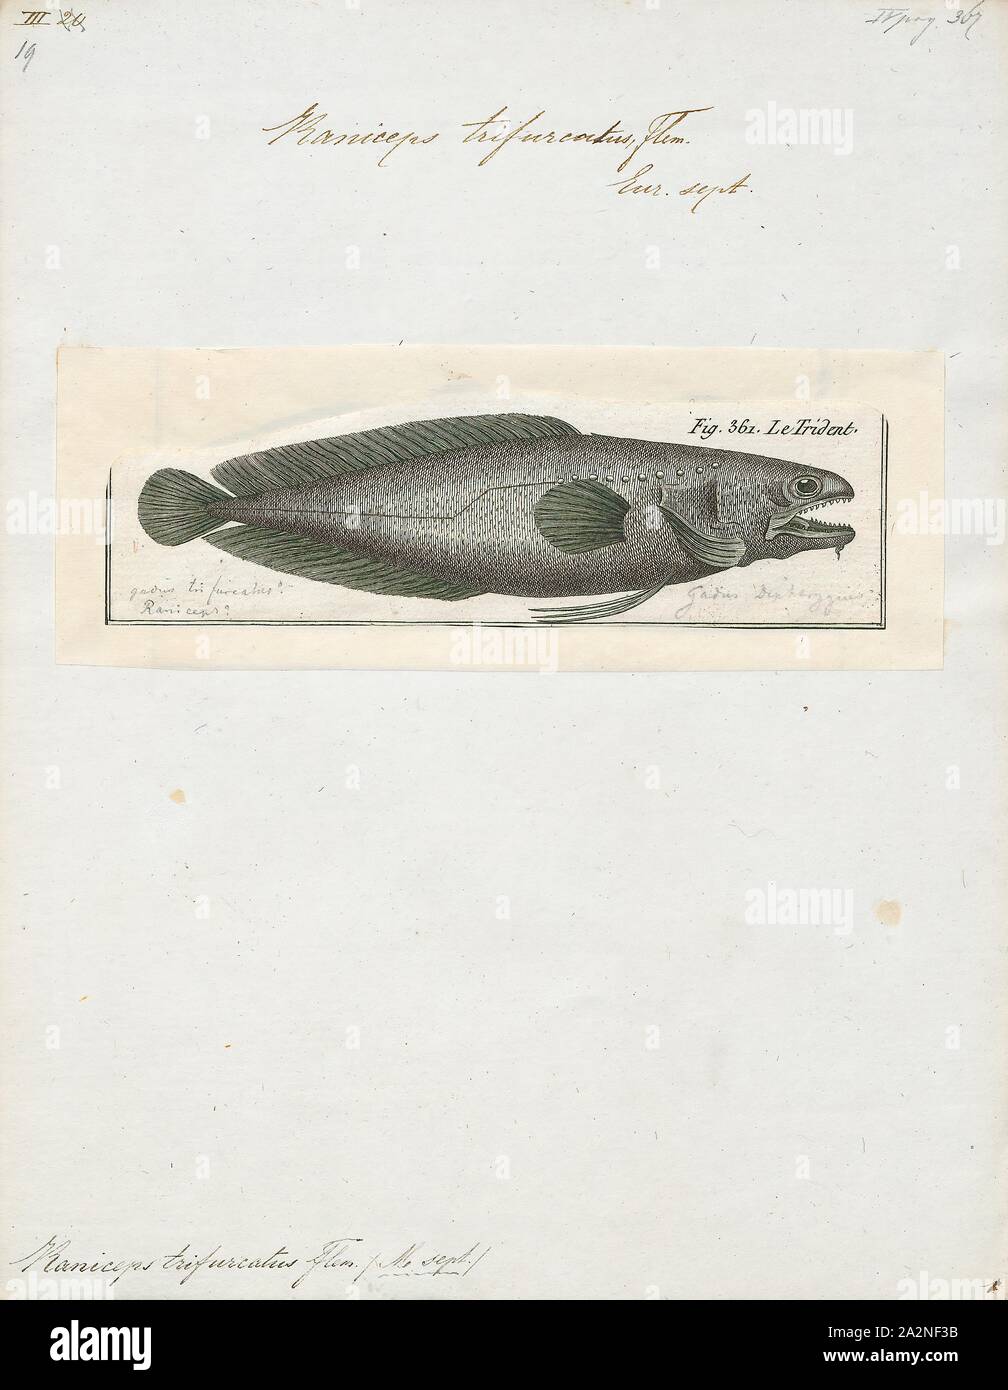 Trifurcus Raniceps, Drucken, Raniceps raninus, die Kaulquappe Fisch (Raniceps raninus) ist eine Pflanzenart aus der Gattung der Gadidae Fisch native auf den nordöstlichen Atlantik rund um die Küsten von Frankreich, Irland und das Vereinigte Königreich und die Nordsee. Die Art wächst auf eine Gesamtlänge von 27,5 cm (10,8 in). Es hat keine Bedeutung für die kommerzielle Fischerei Industrie, obwohl es im Aquarium Handel zu finden ist und in öffentlichen Aquarien angezeigt., 1788 Stockfoto